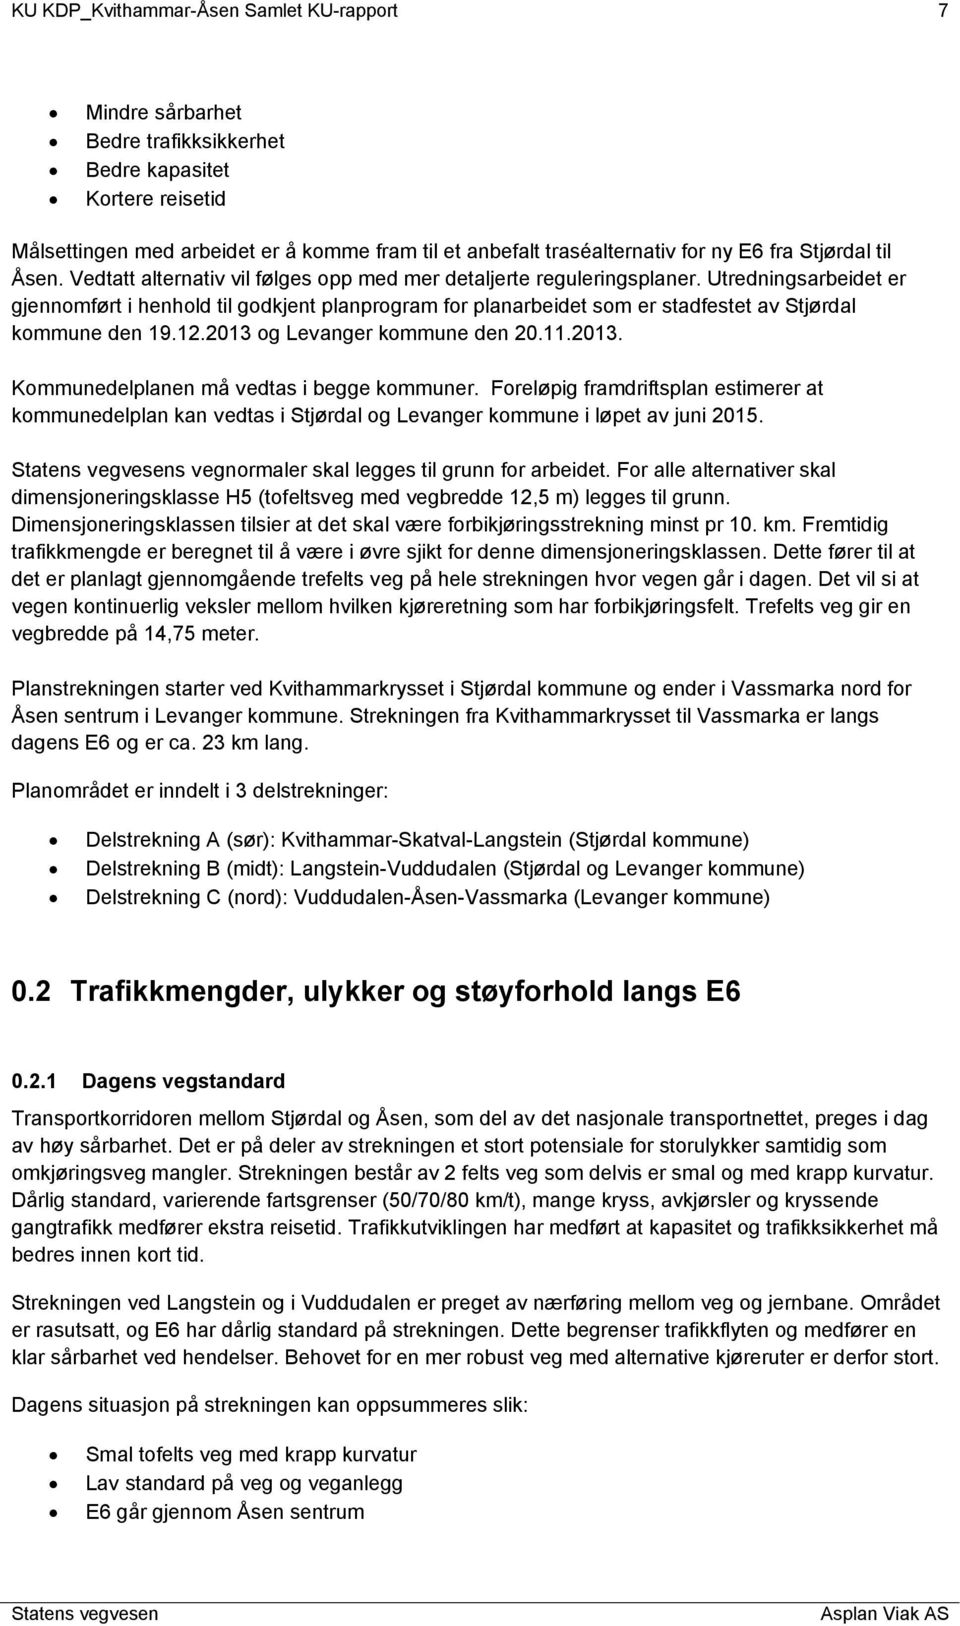 Utredningsarbeidet er gjennomført i henhold til godkjent planprogram for planarbeidet som er stadfestet av Stjørdal kommune den 19.12.2013 og Levanger kommune den 20.11.2013. Kommunedelplanen må vedtas i begge kommuner.